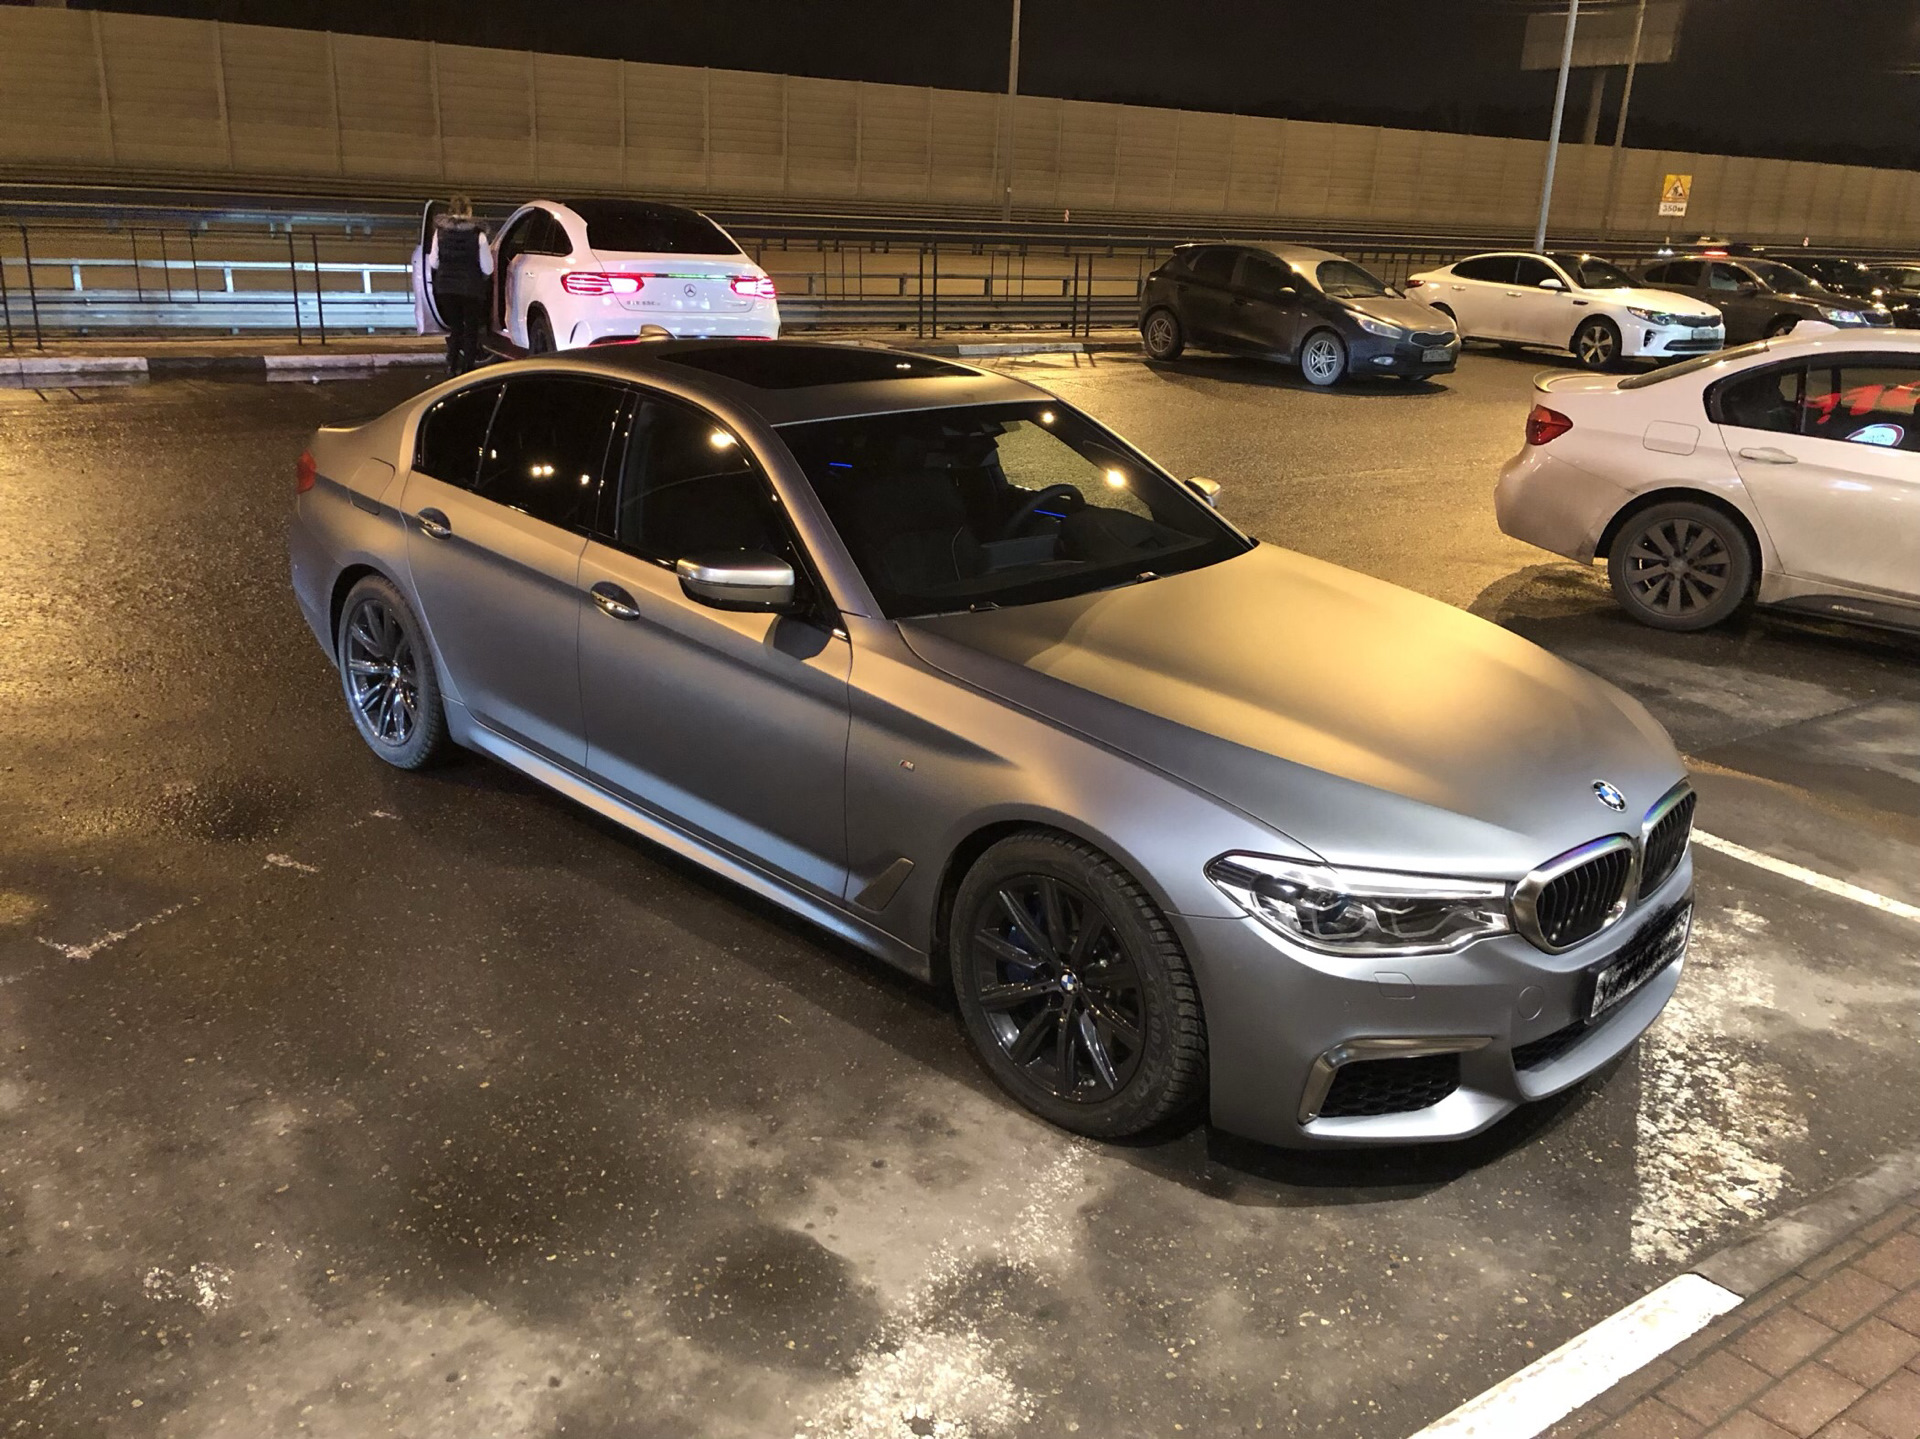 BMW g30 матовый серый